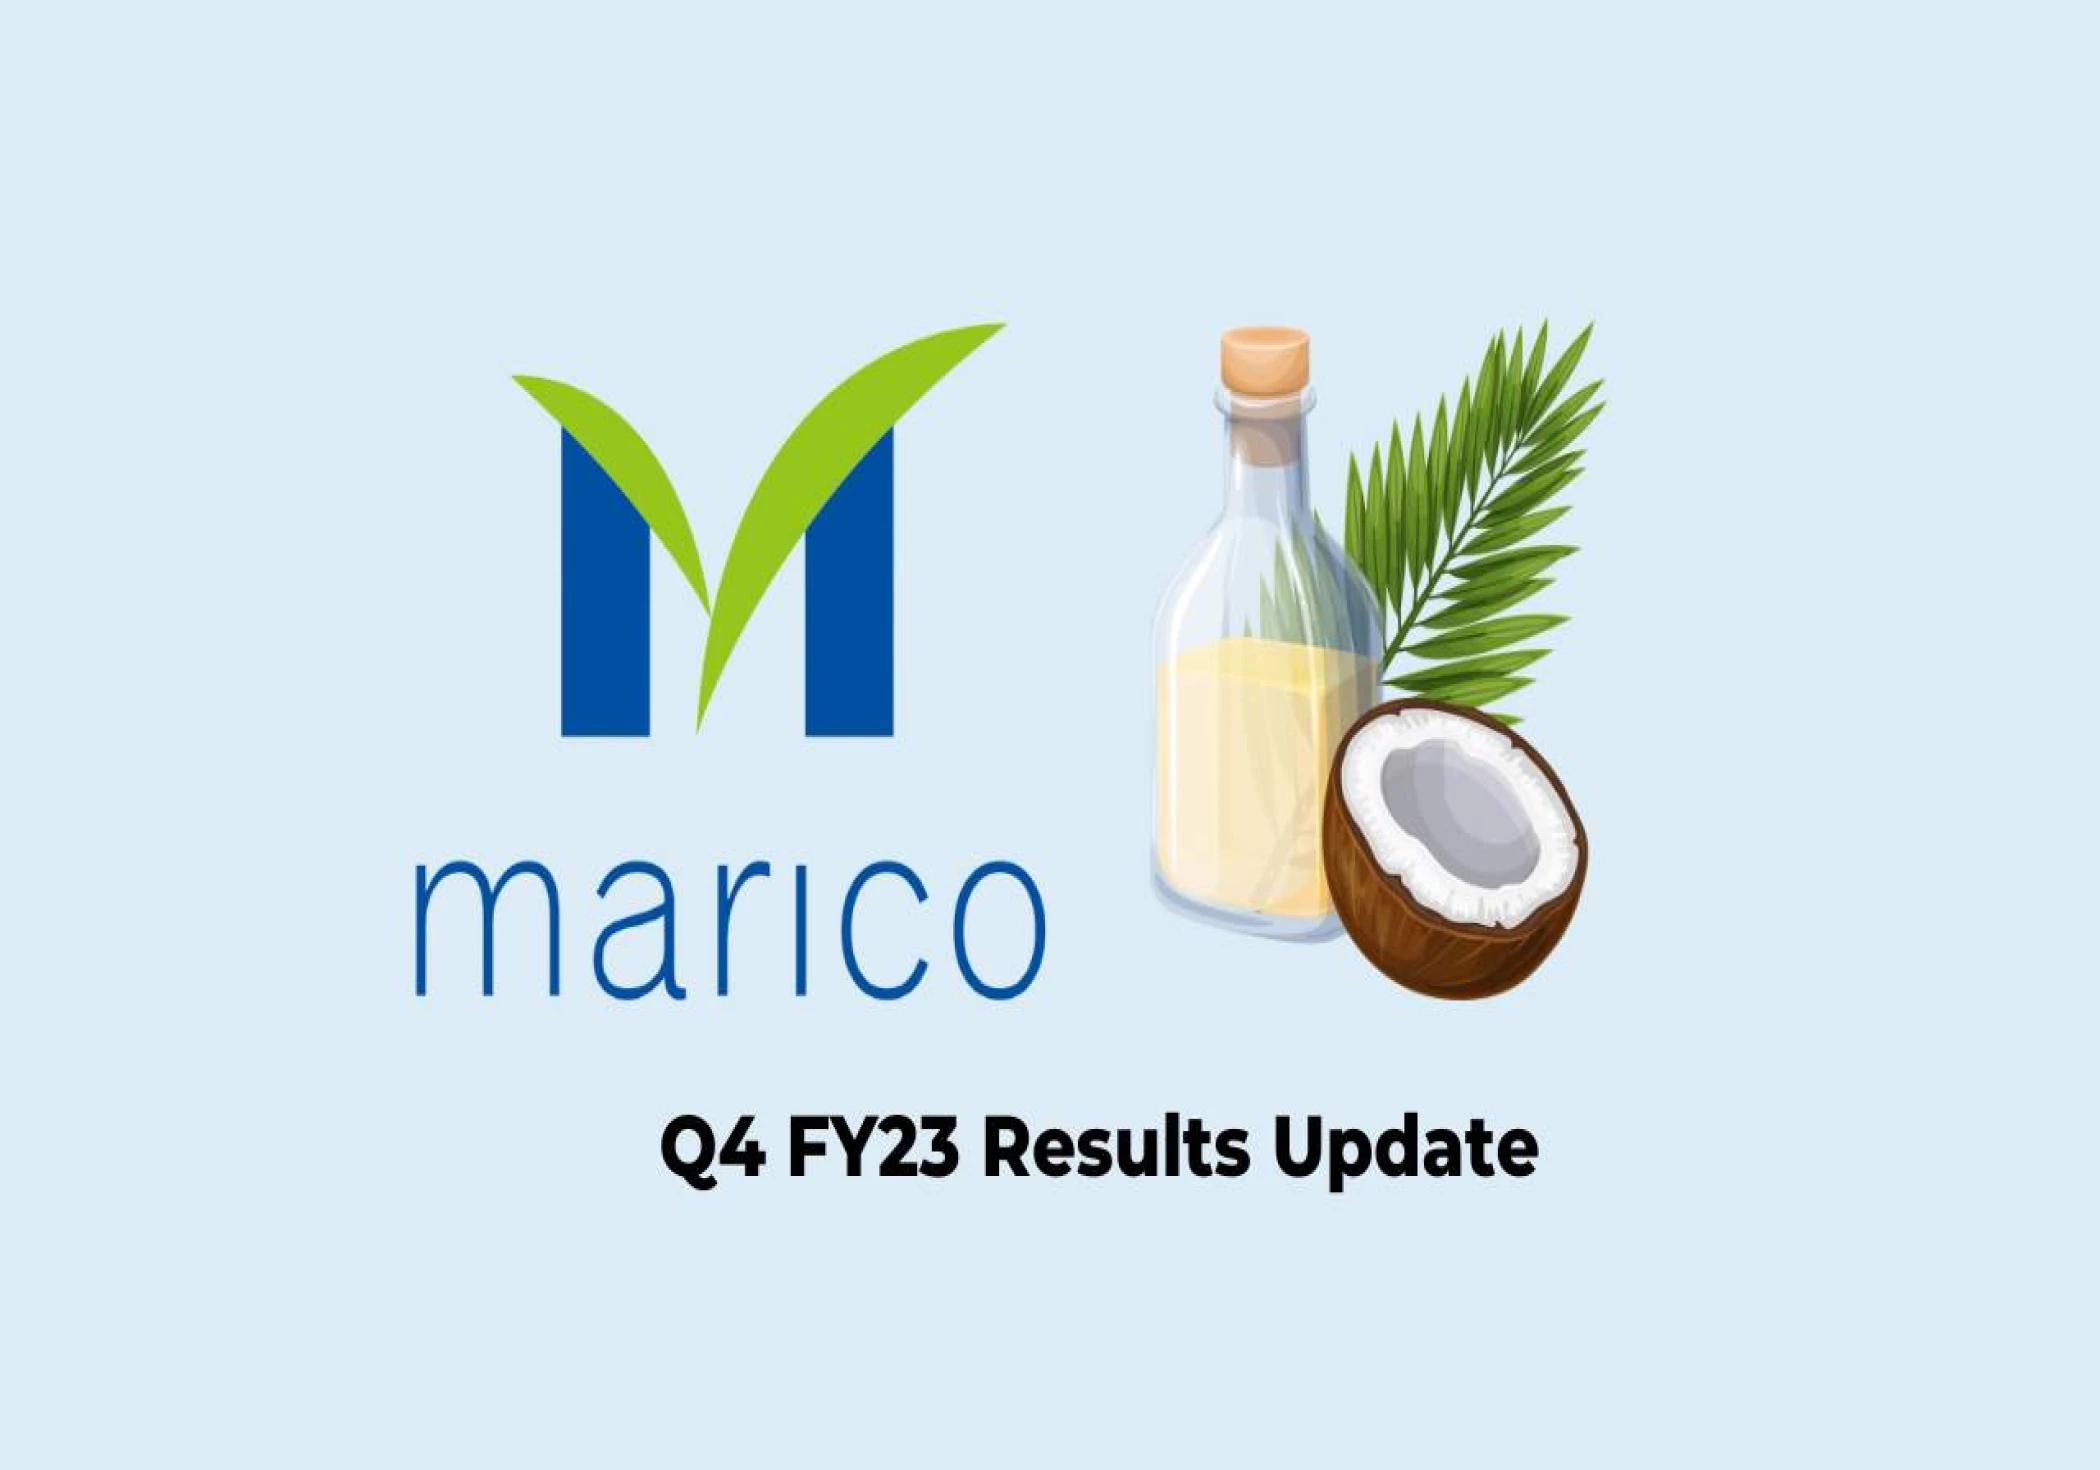 Marico's Profit Up Despite Flat Revenue in Q4